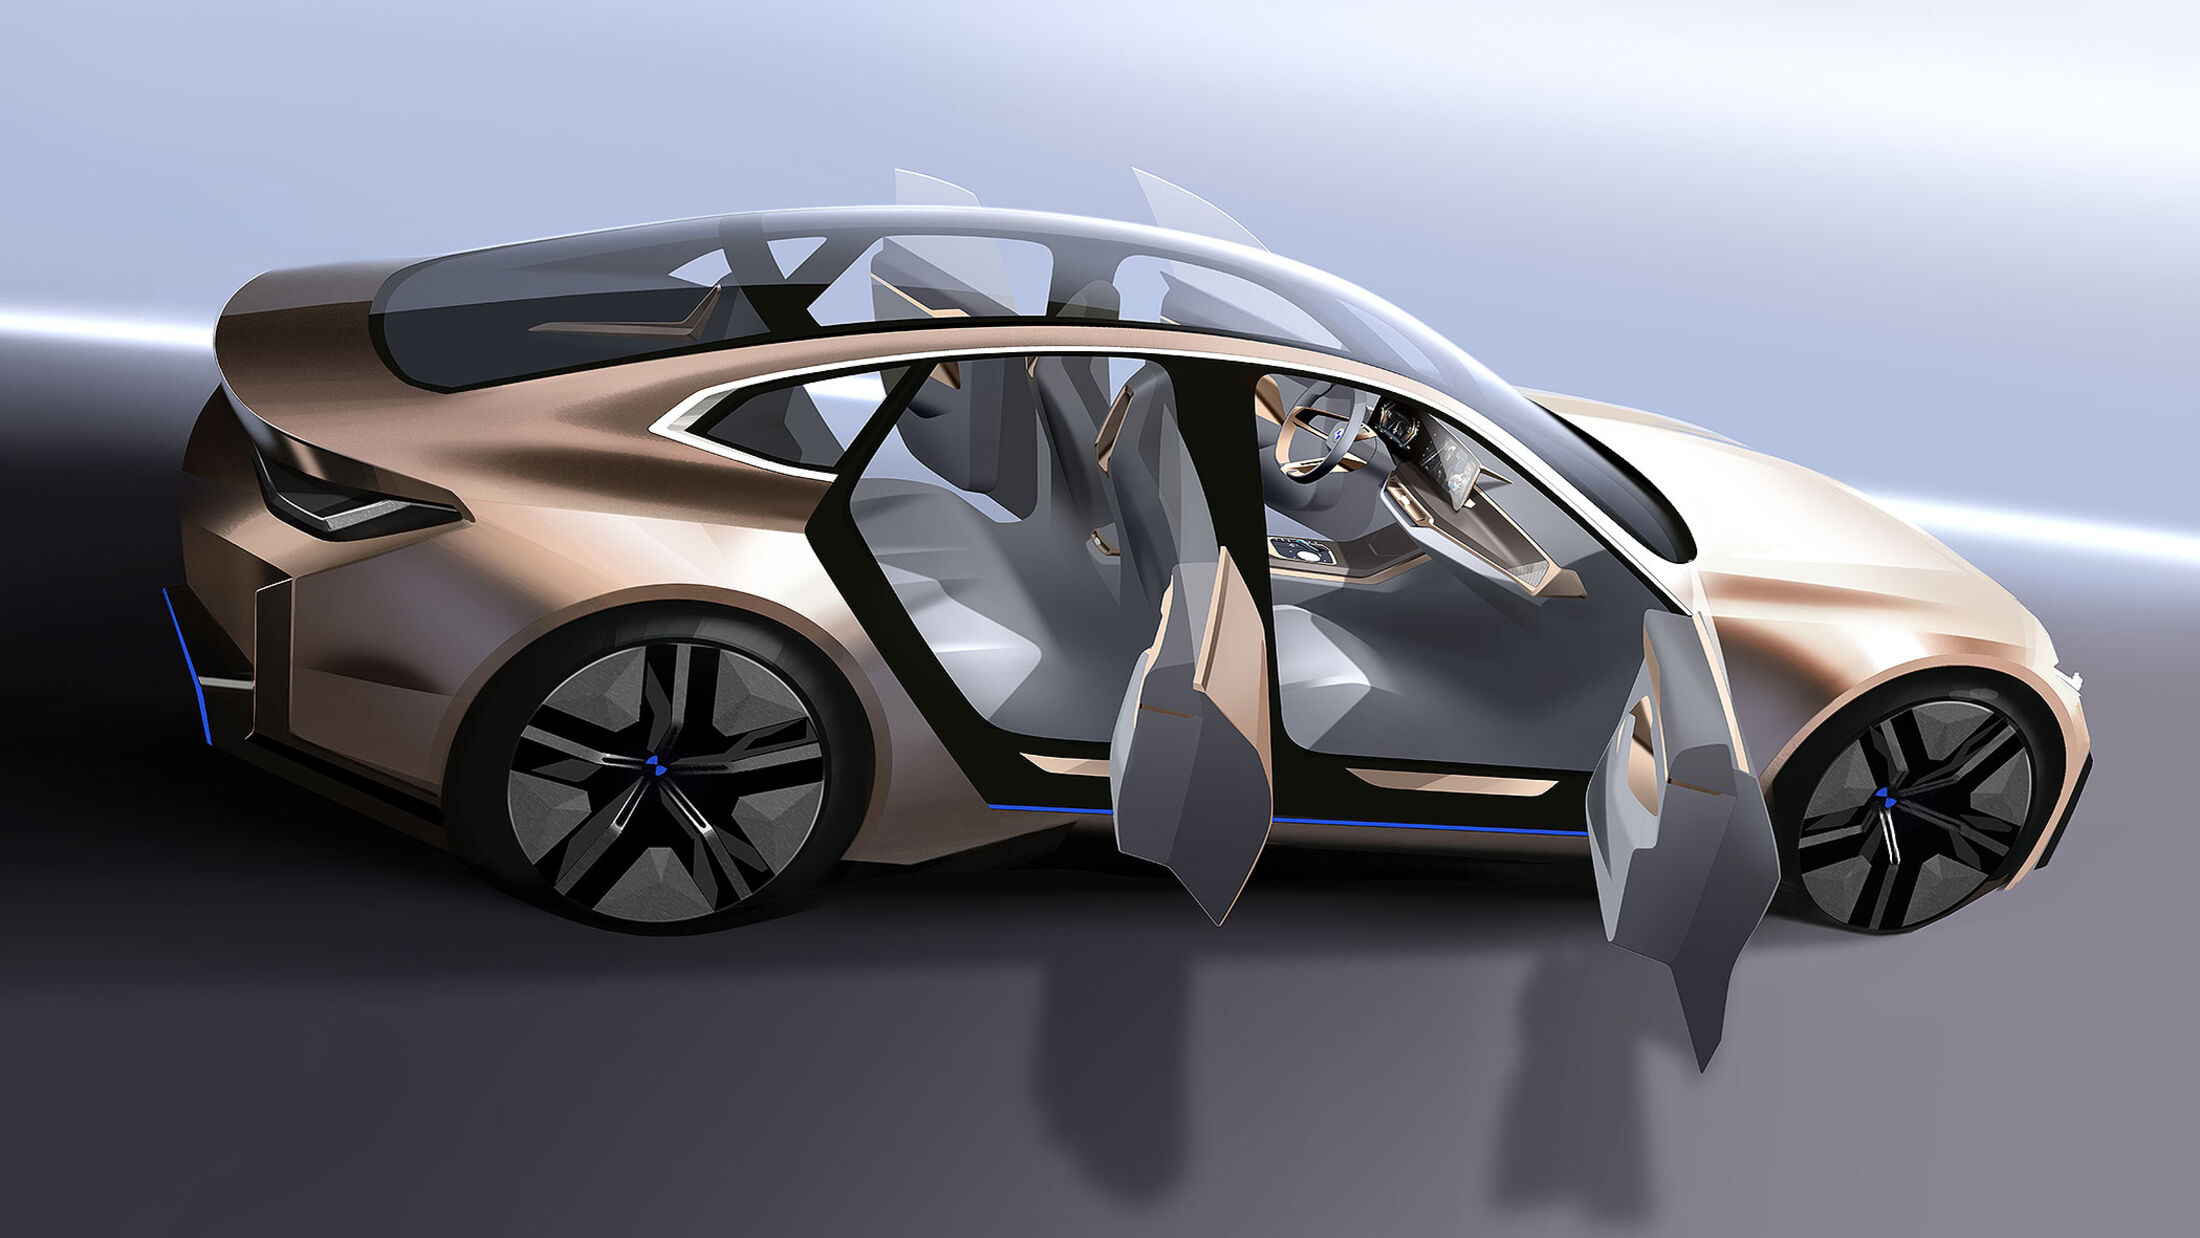 Skoda zeigt Bilder der 6 Elektroautos, die bis 2026 starten